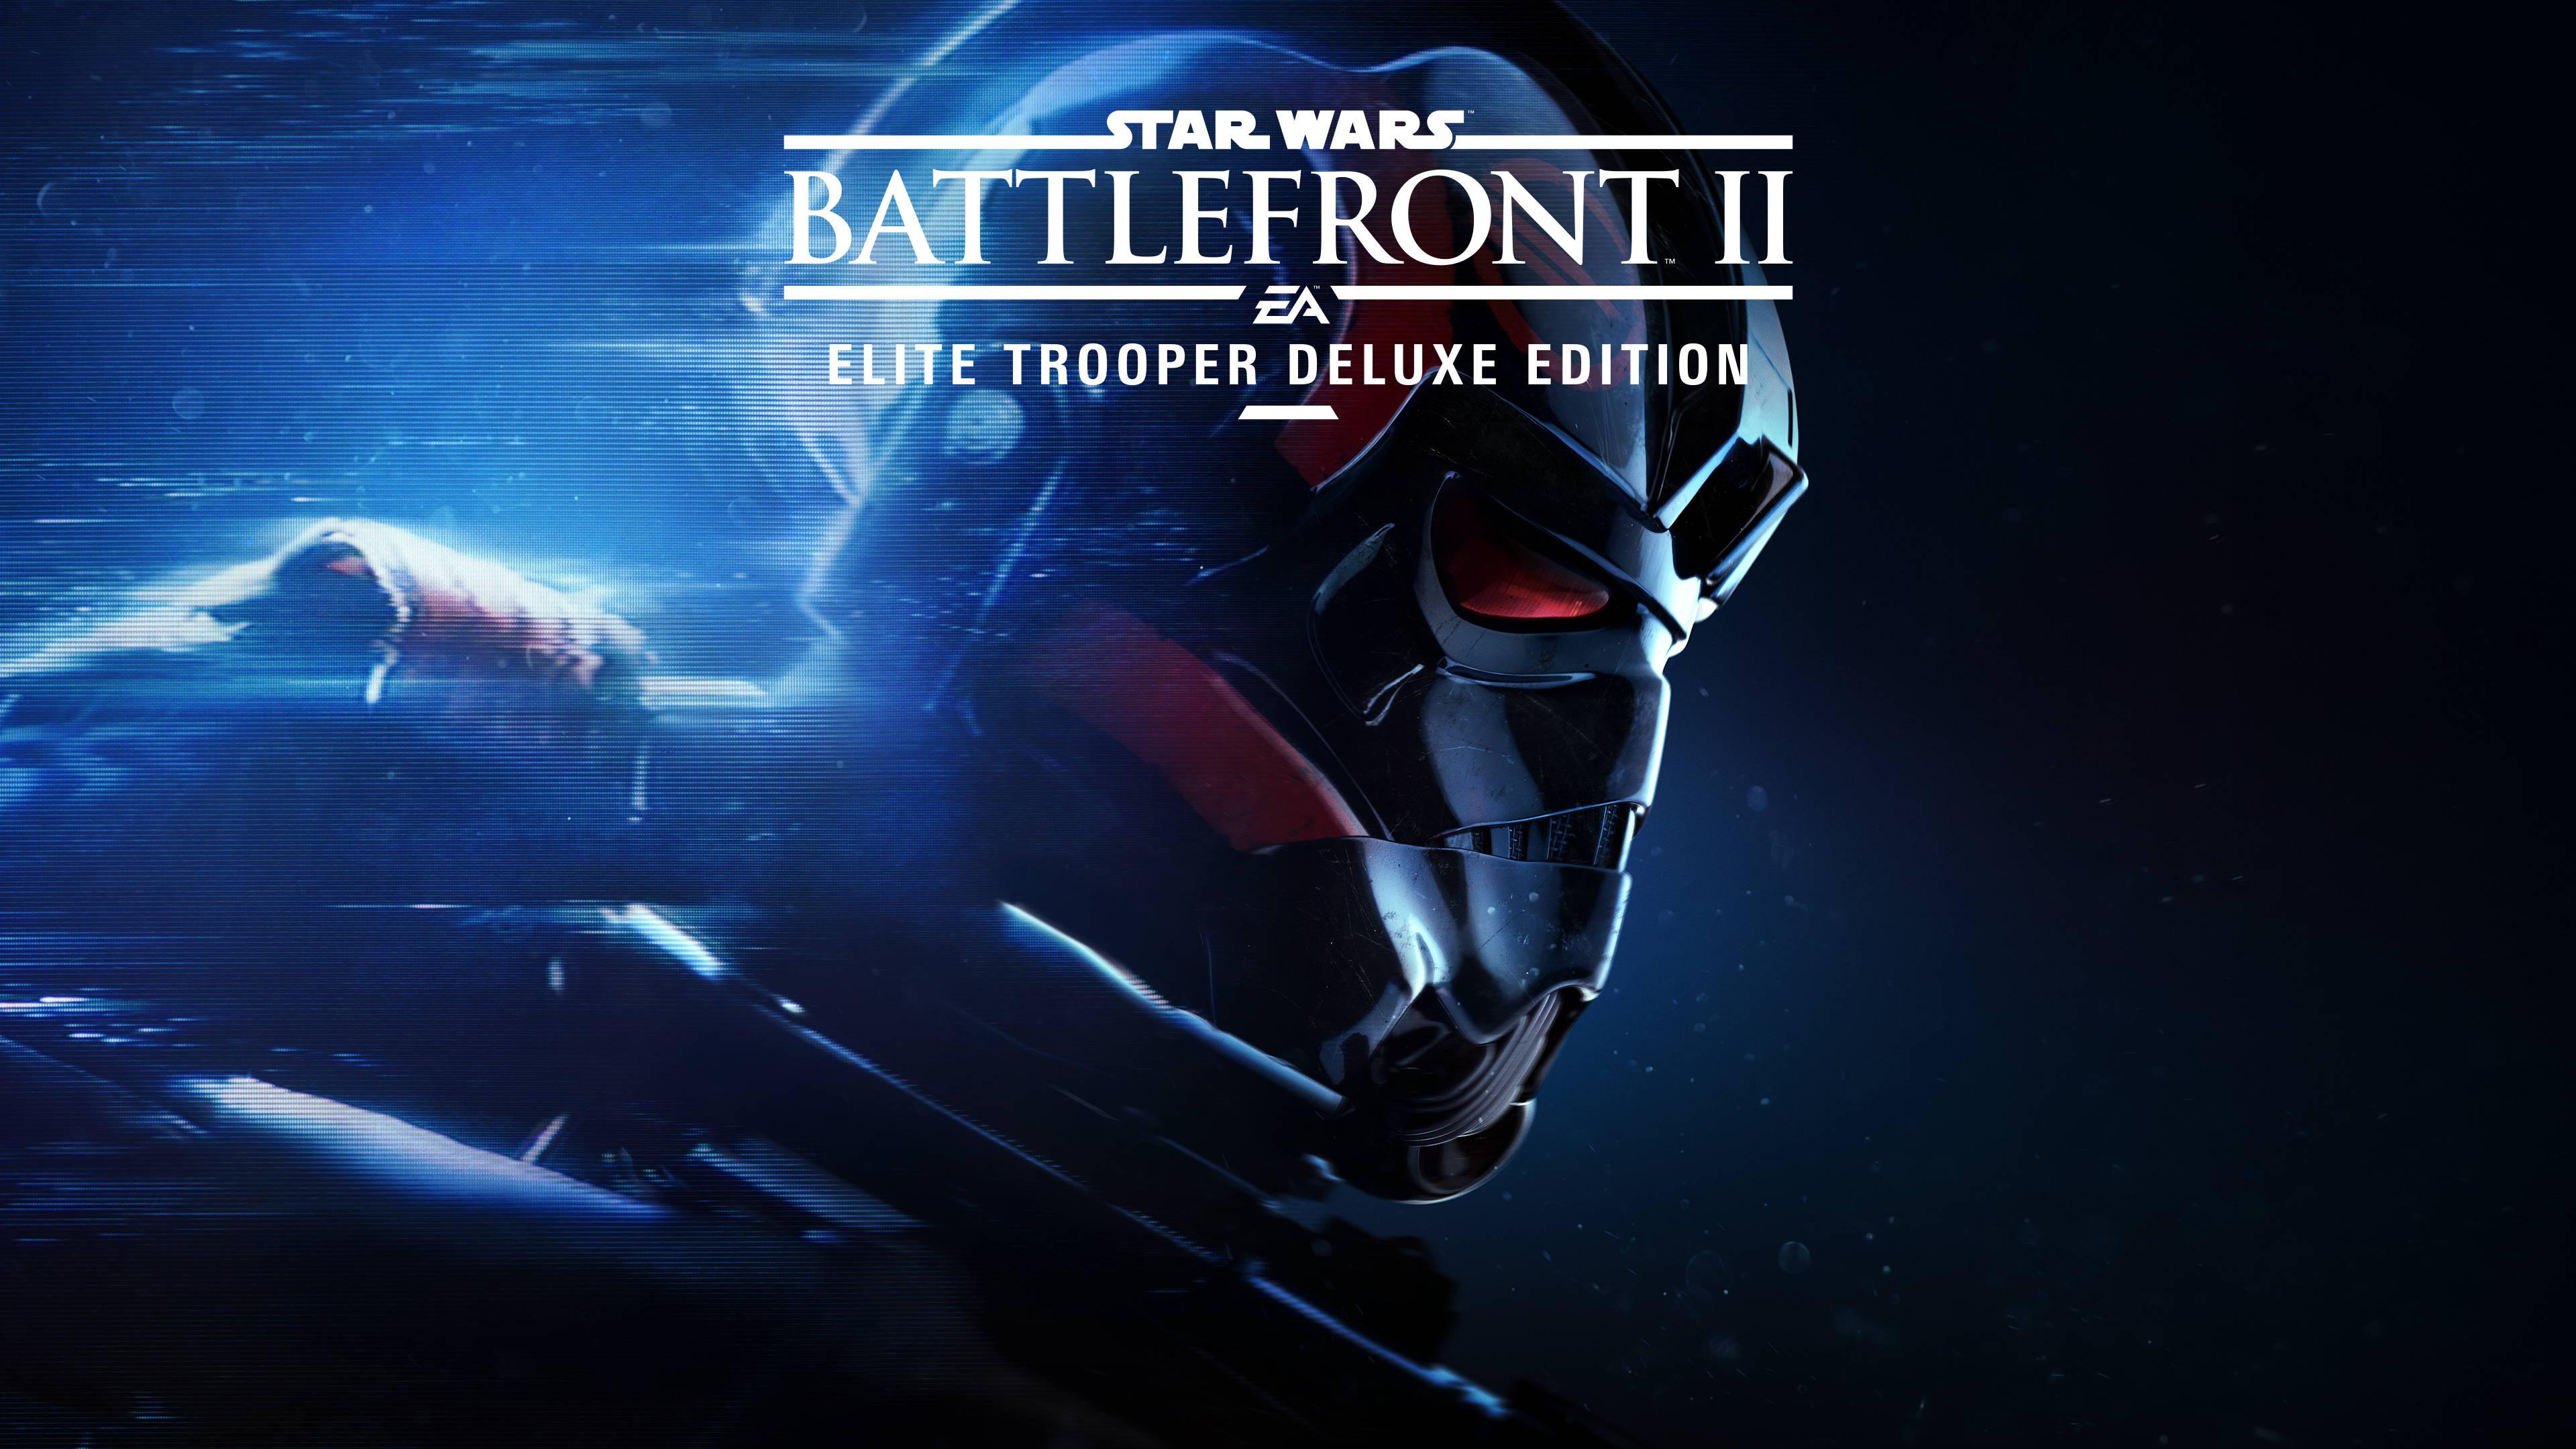 Star Wars Battlefront II Elite Trooper Deluxe Edition. Games HD